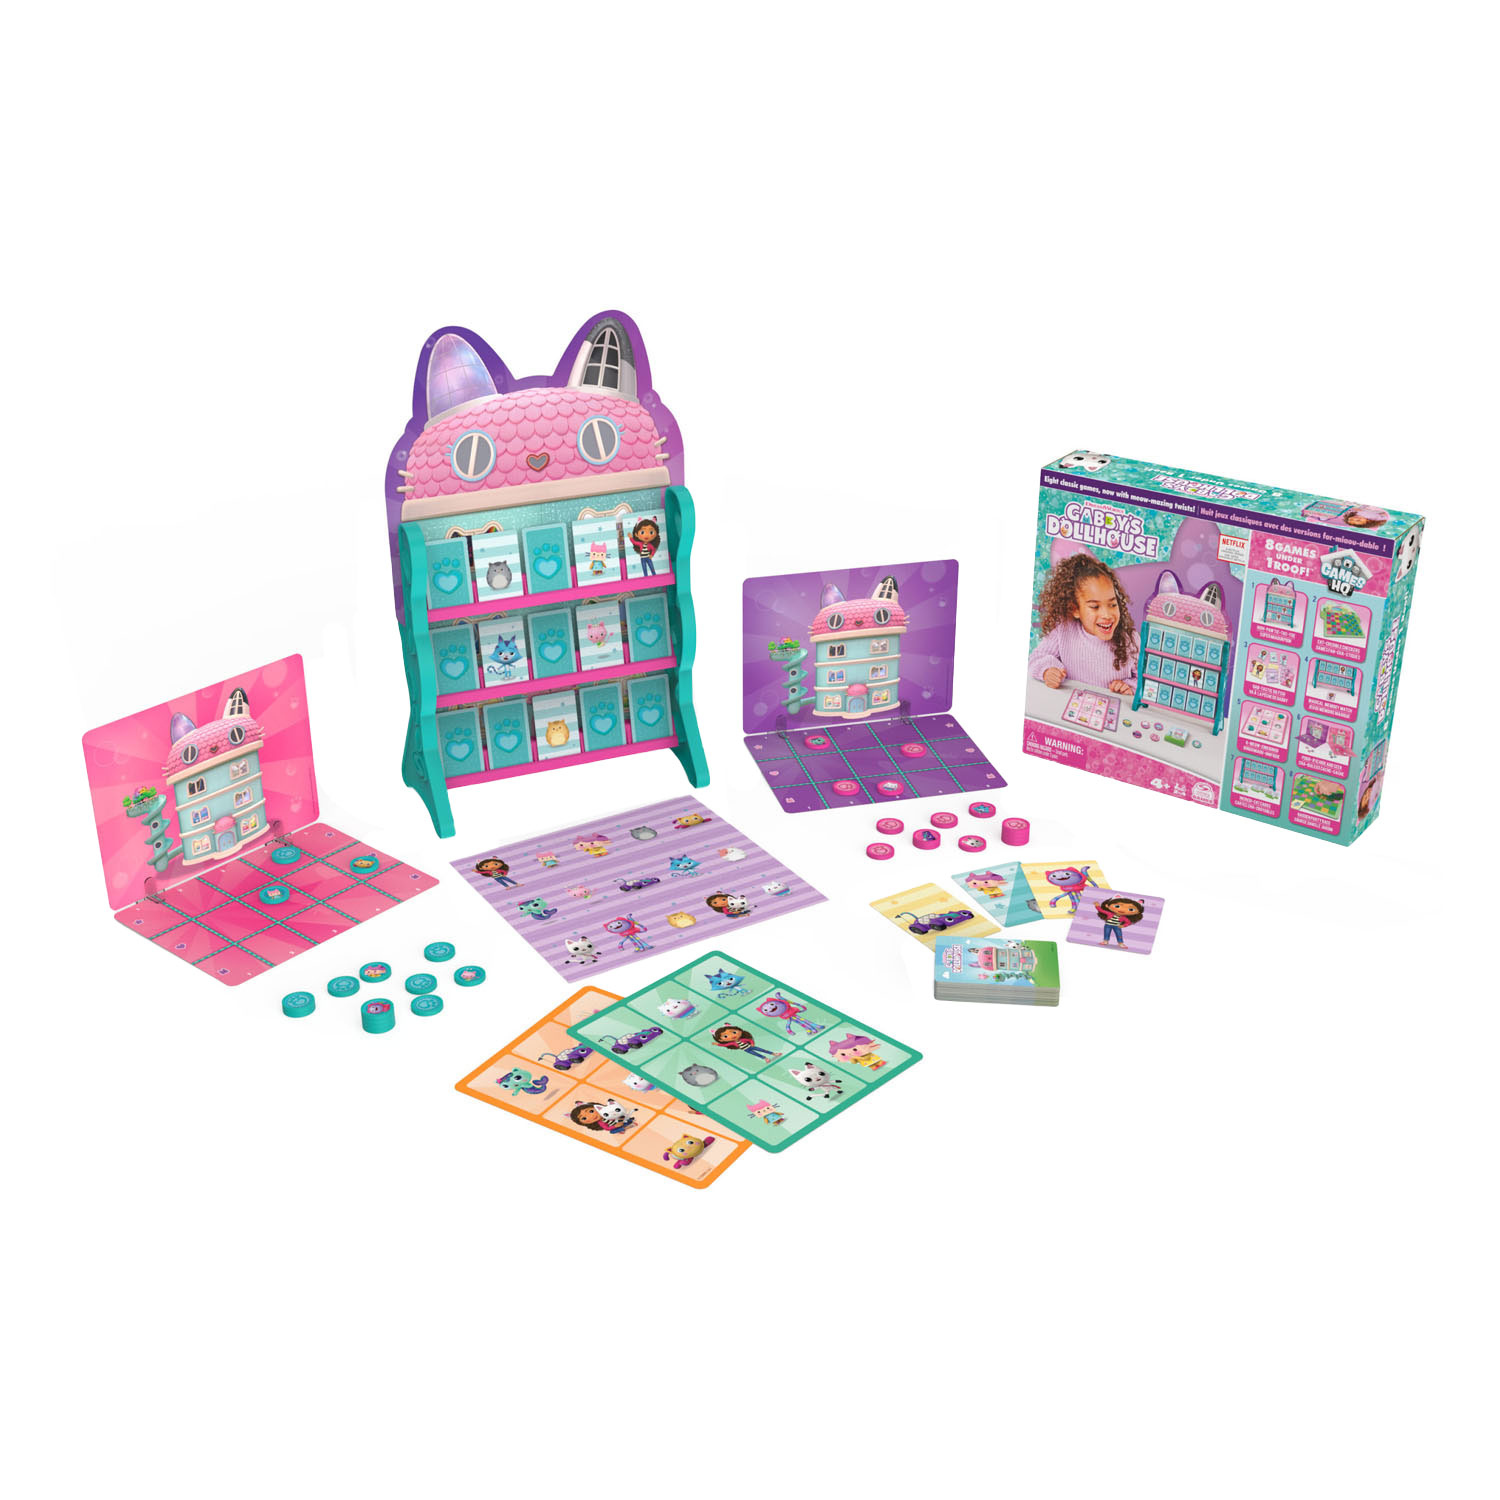 Gabby's Dollhouse – Spielpaket mit 8 Spielen